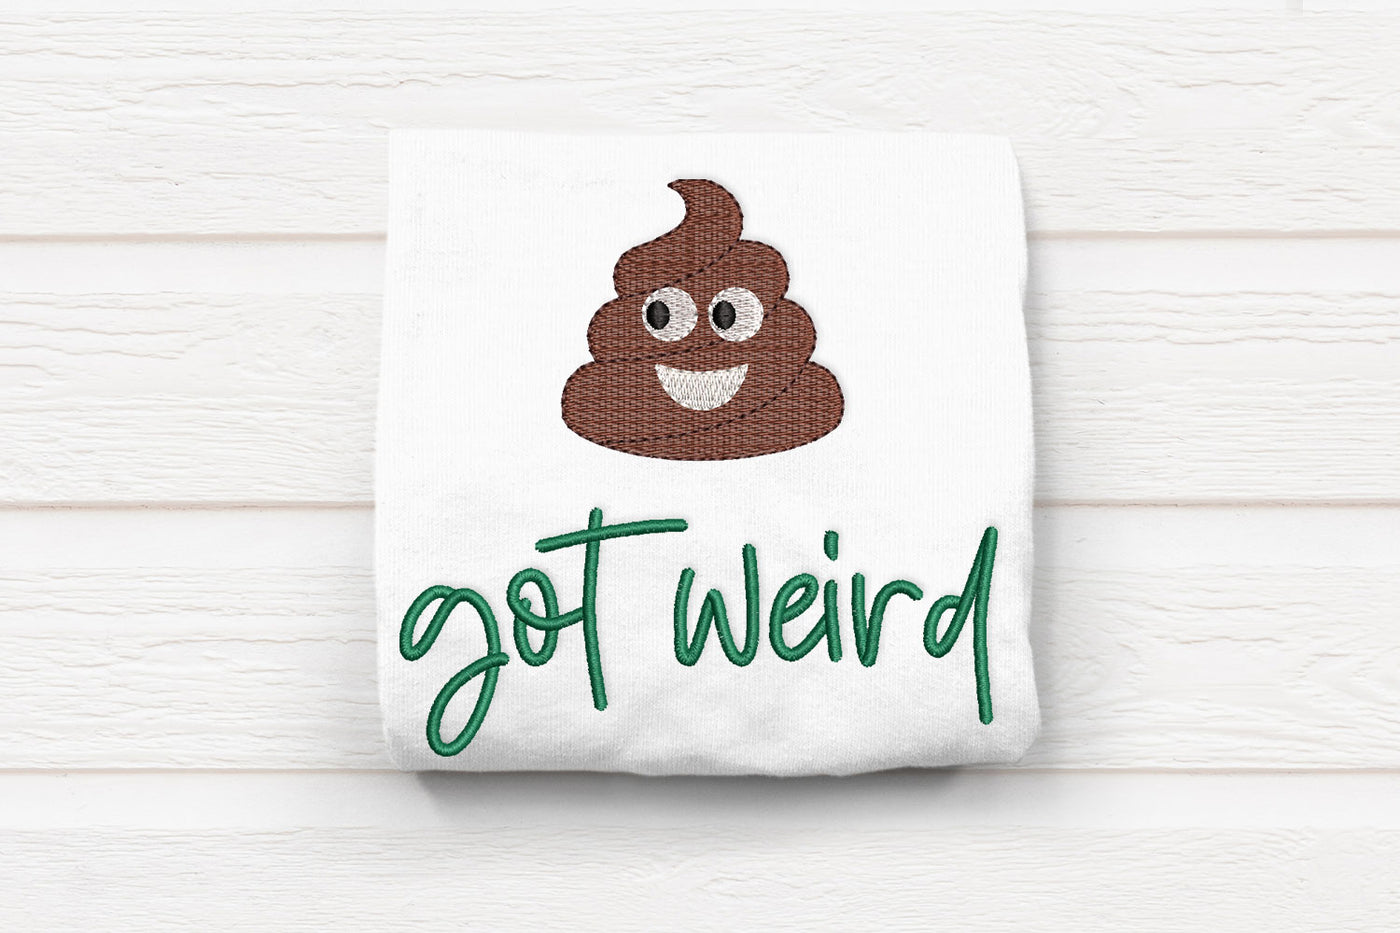 Poop got weird with emoji embroidery design